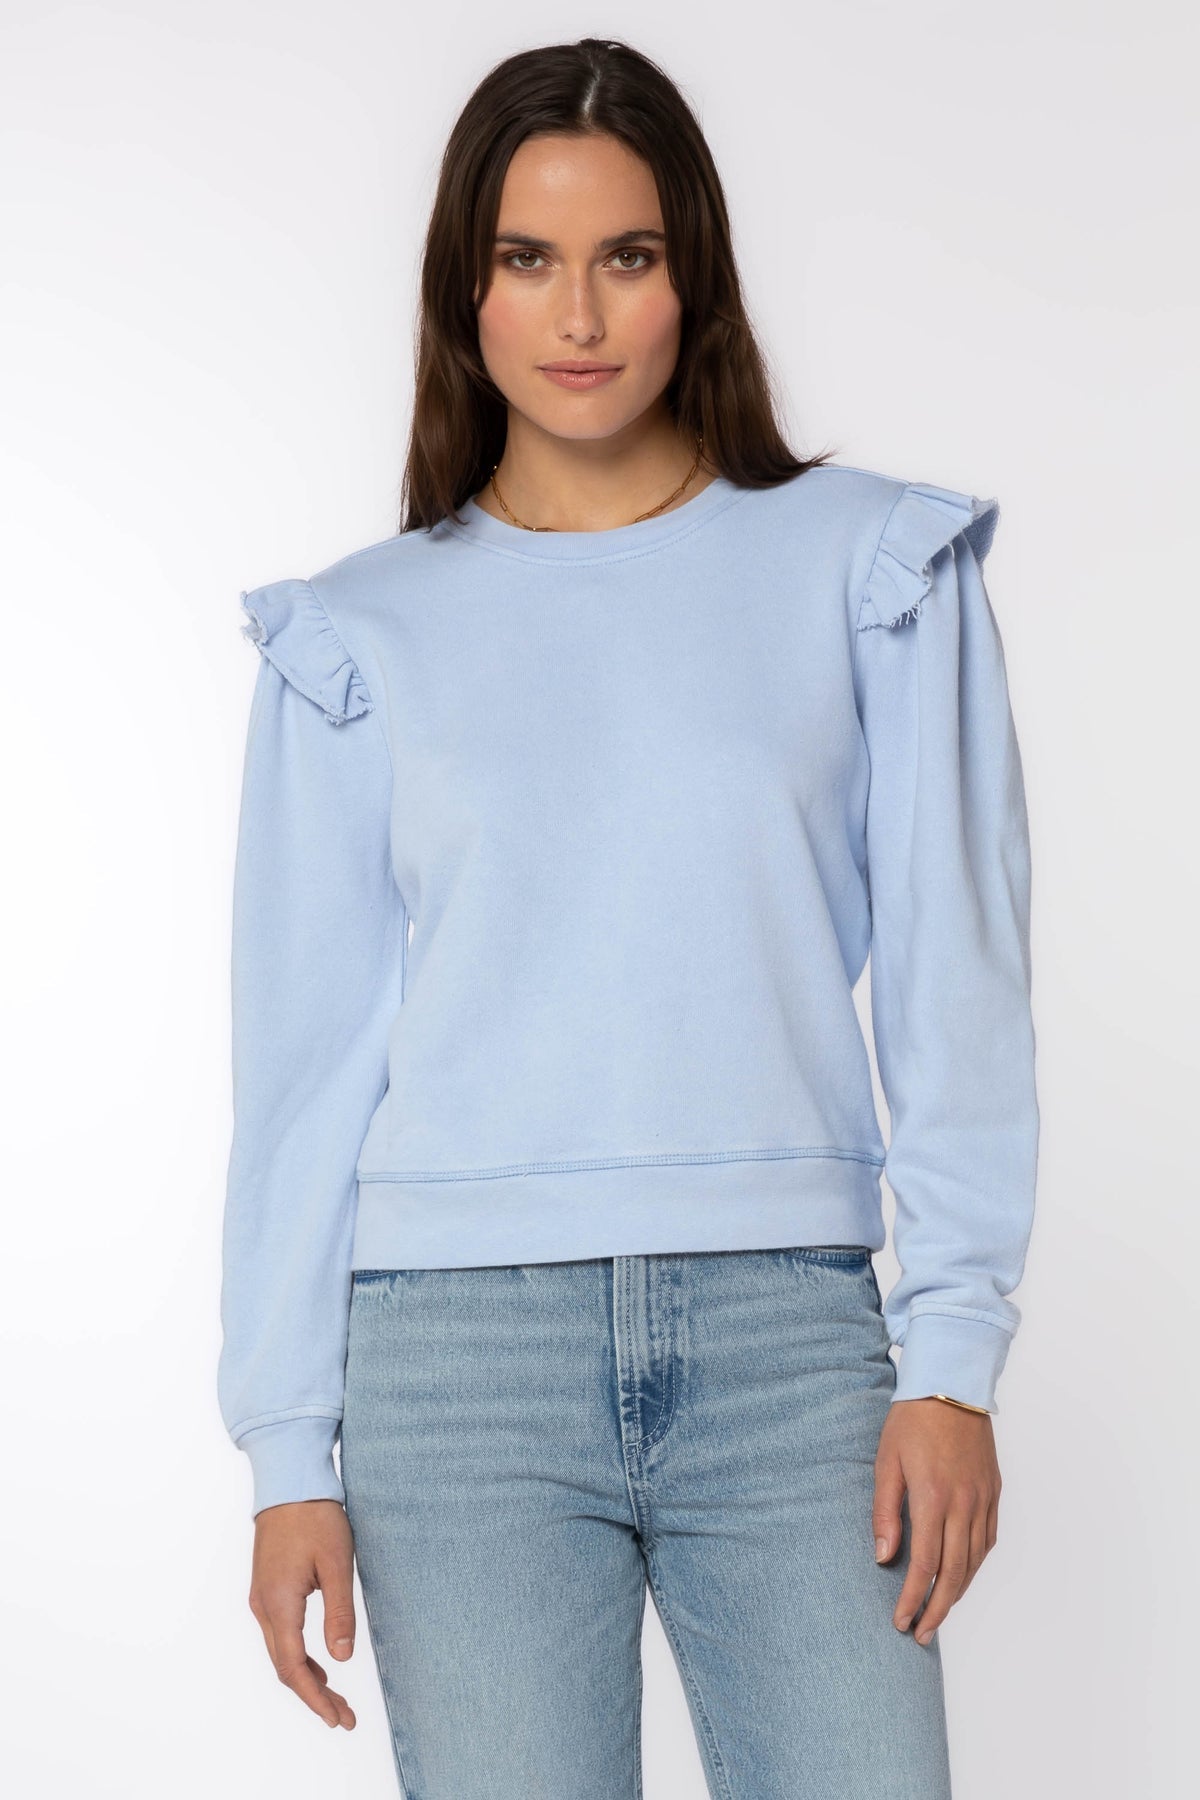 Baby Blue Sweatshirt - FINAL SALE